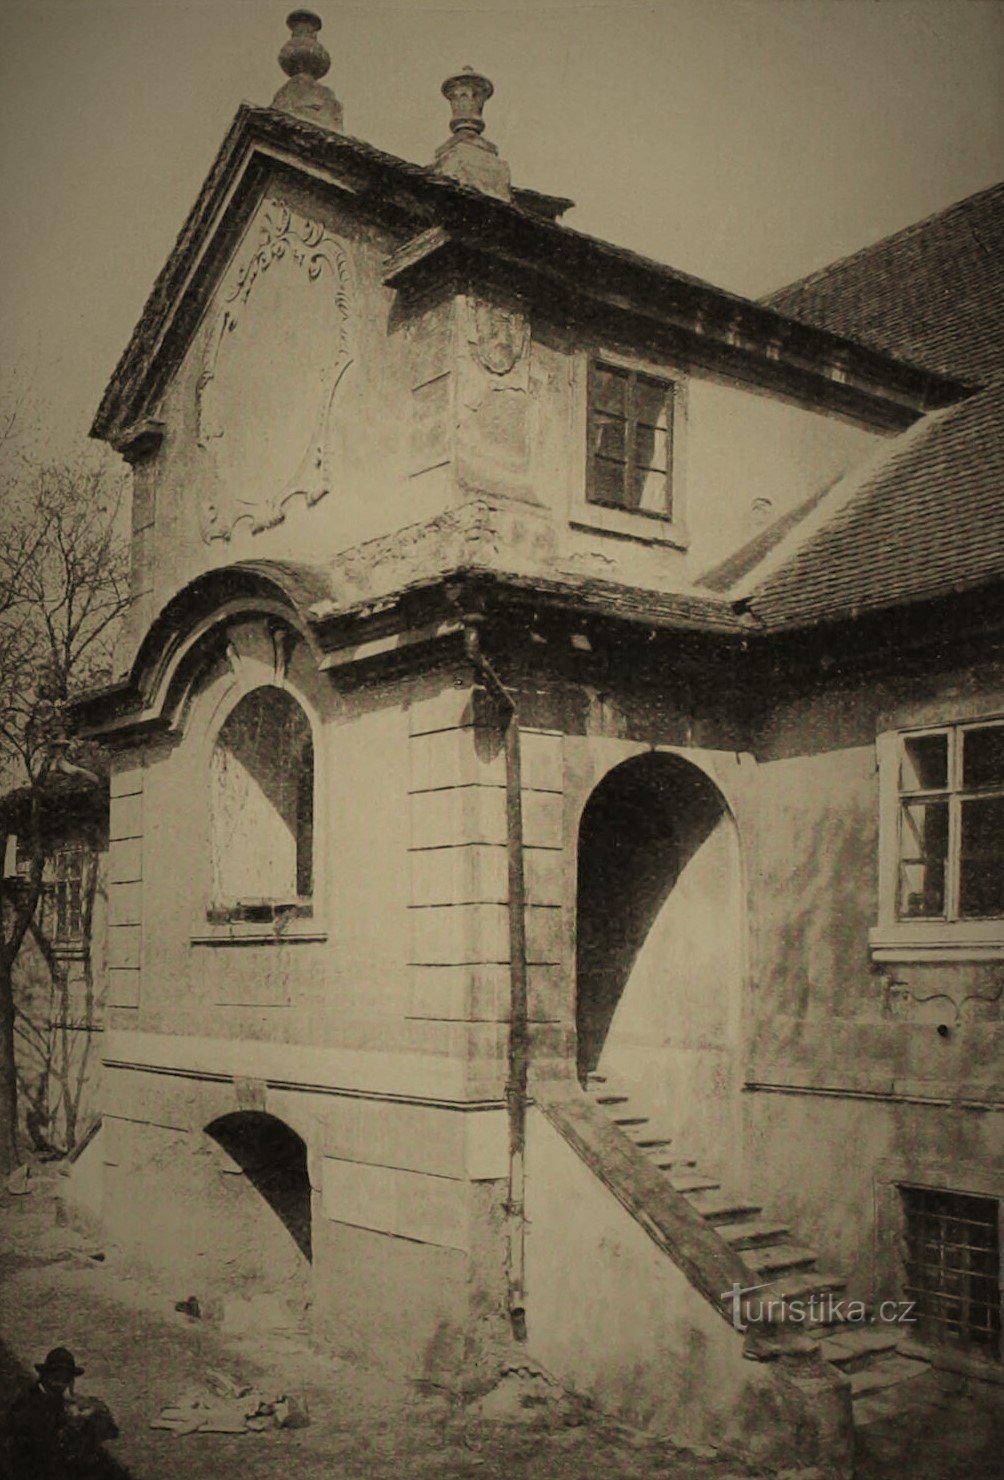 Portikus der ursprünglichen Mühle in Roudnice nad Labem (vor 1907)